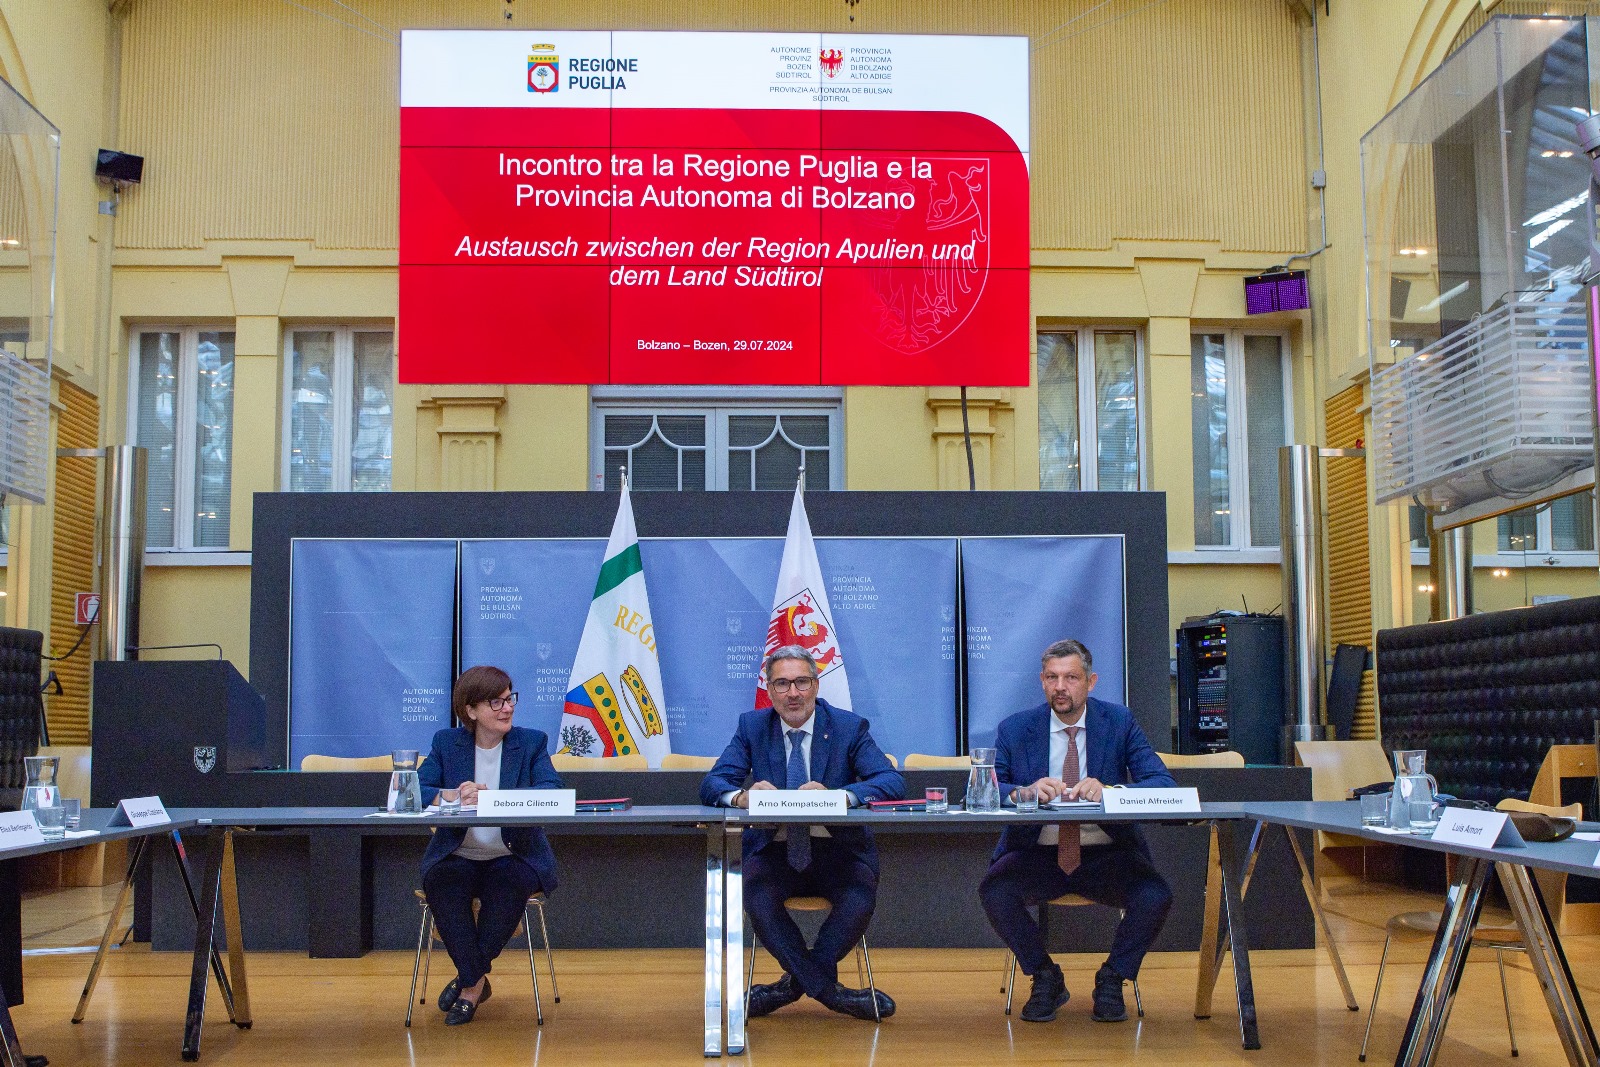 Galleria Puglia e Alto Adige firmano un accordo per la promozione dell’uso dell’idrogeno nel settore trasporti e della transizione ecologica - Diapositiva 7 di 9